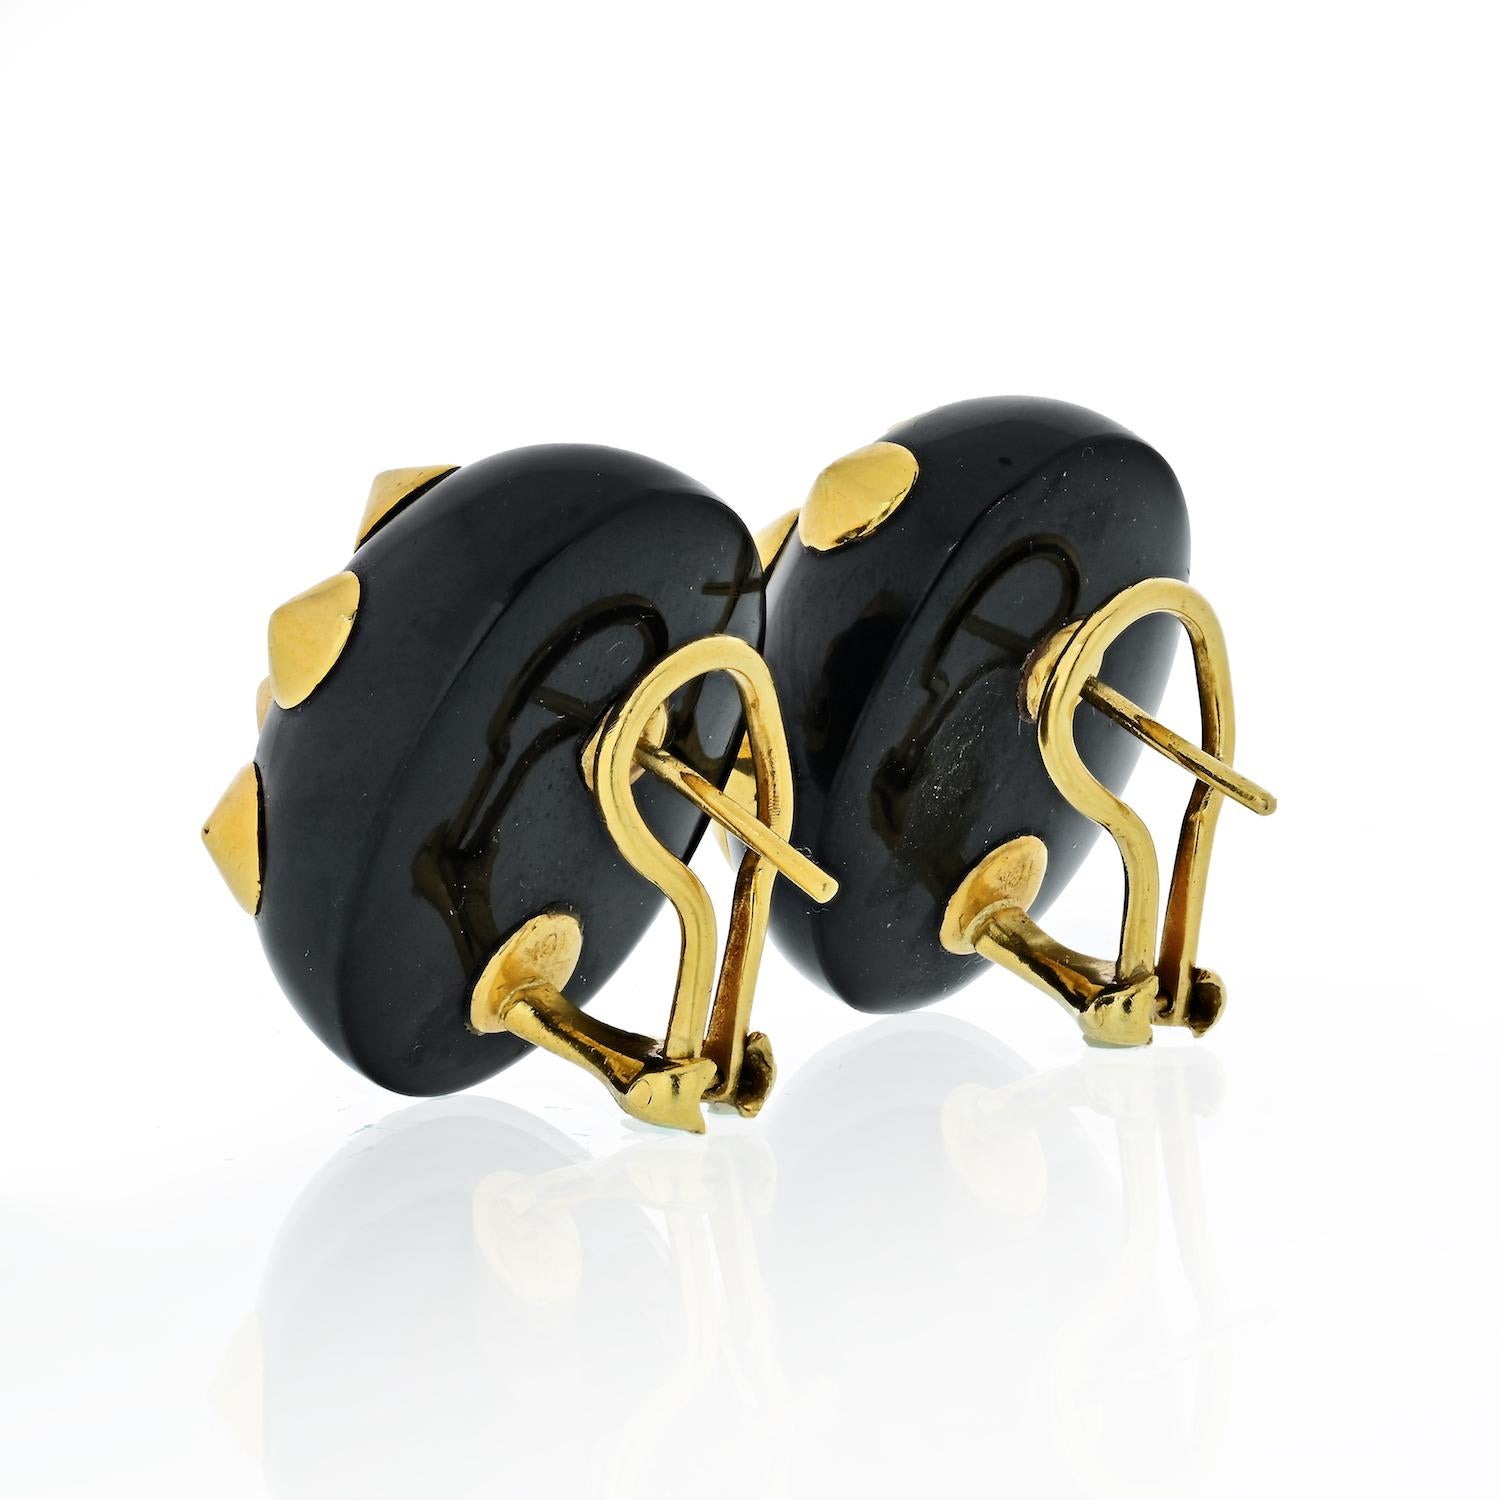 Une paire de boucles d'oreilles iconiques en or jaune 18k ornées de jade noir. Fabriquées par la célèbre créatrice Angela Cummings, les boucles d'oreilles mesurent 25 mm x 21 mm et pèsent 26 grammes.
Support de poteau pour les oreilles percées. 